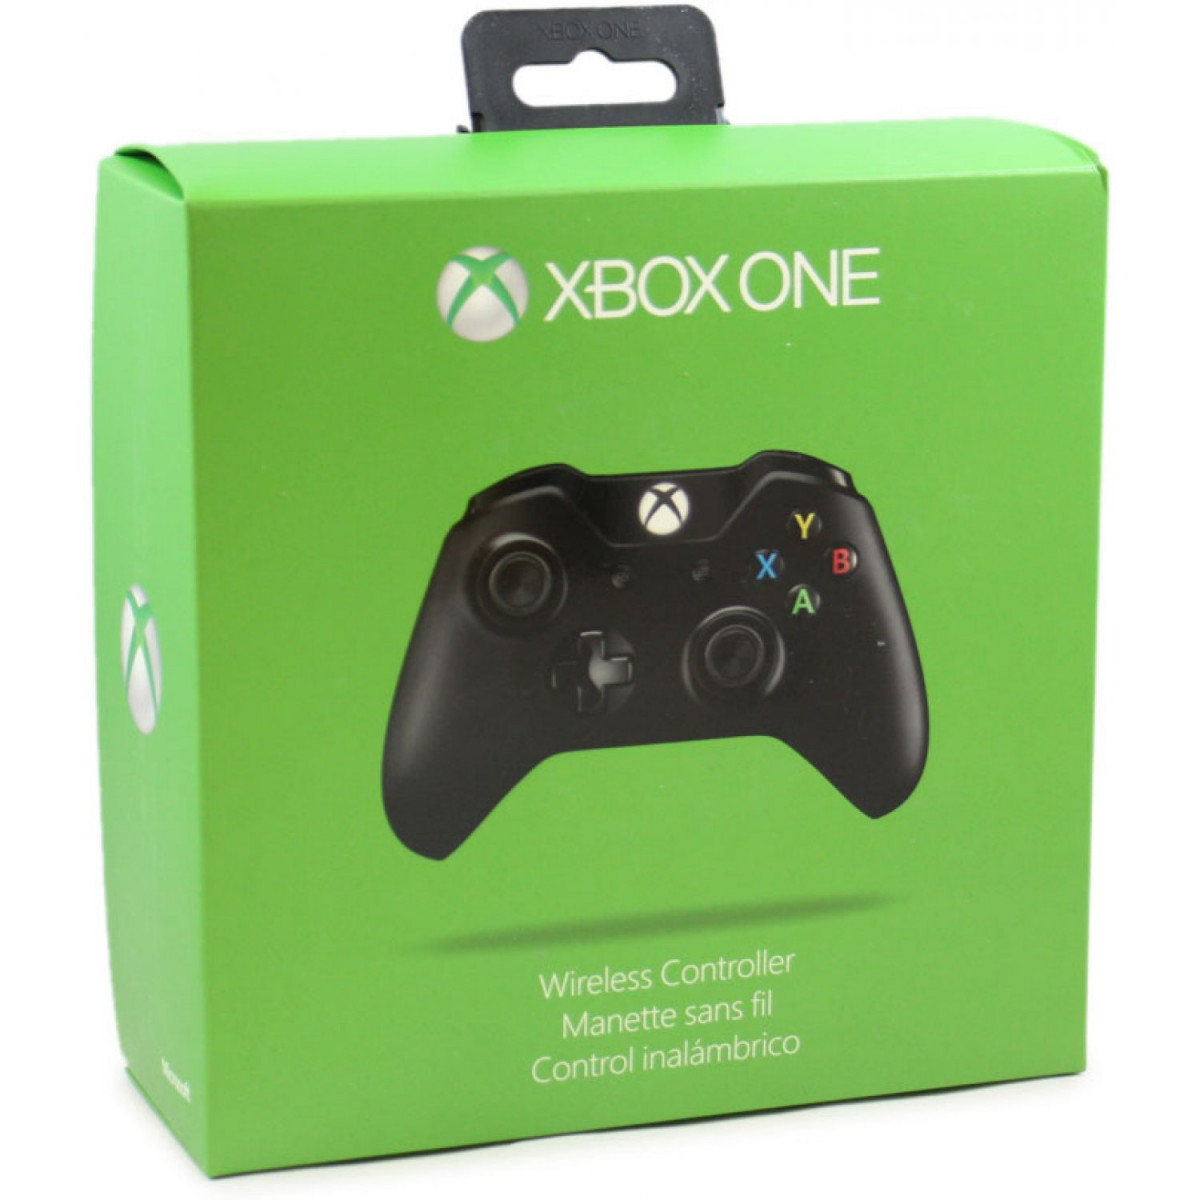 Control 01. Gamepad Xbox one s коробка. Геймпад Xbox 360 упаковка. Xbox 360 one. Джойстик Xbox one в зеленой коробке.